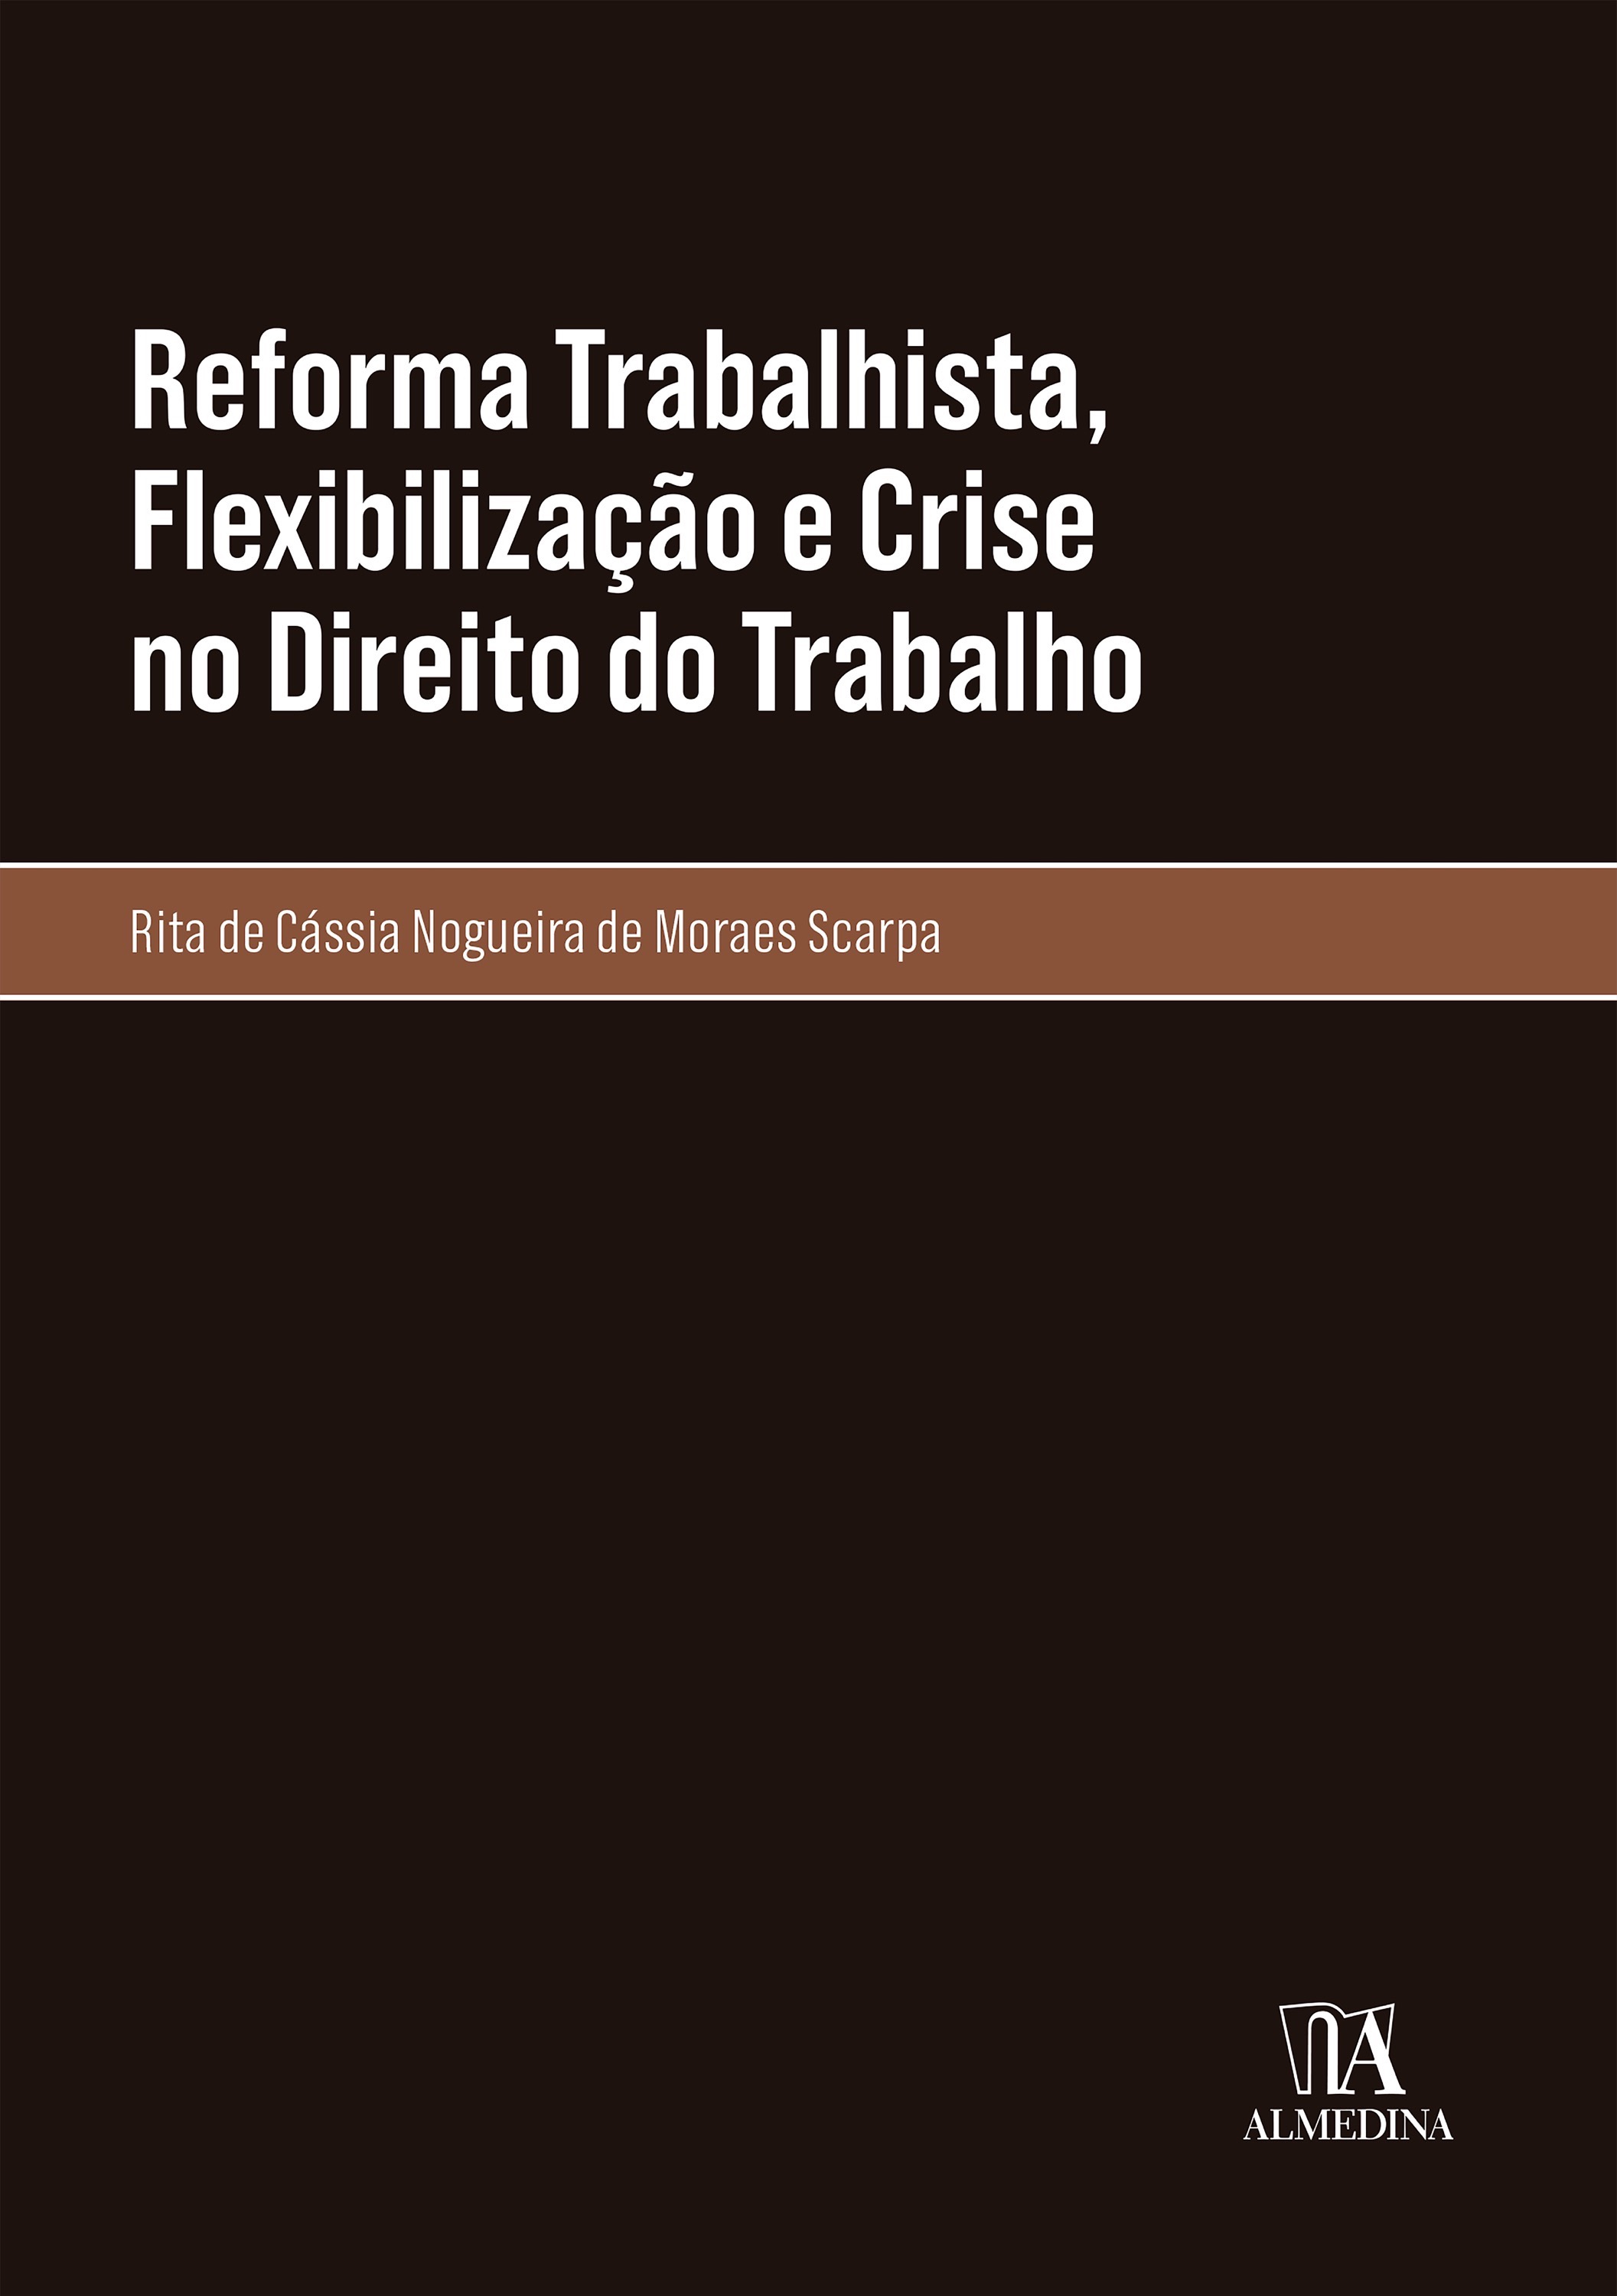 Reforma Trabalhista, Flexibilização e Crise no Direito do Trabalho